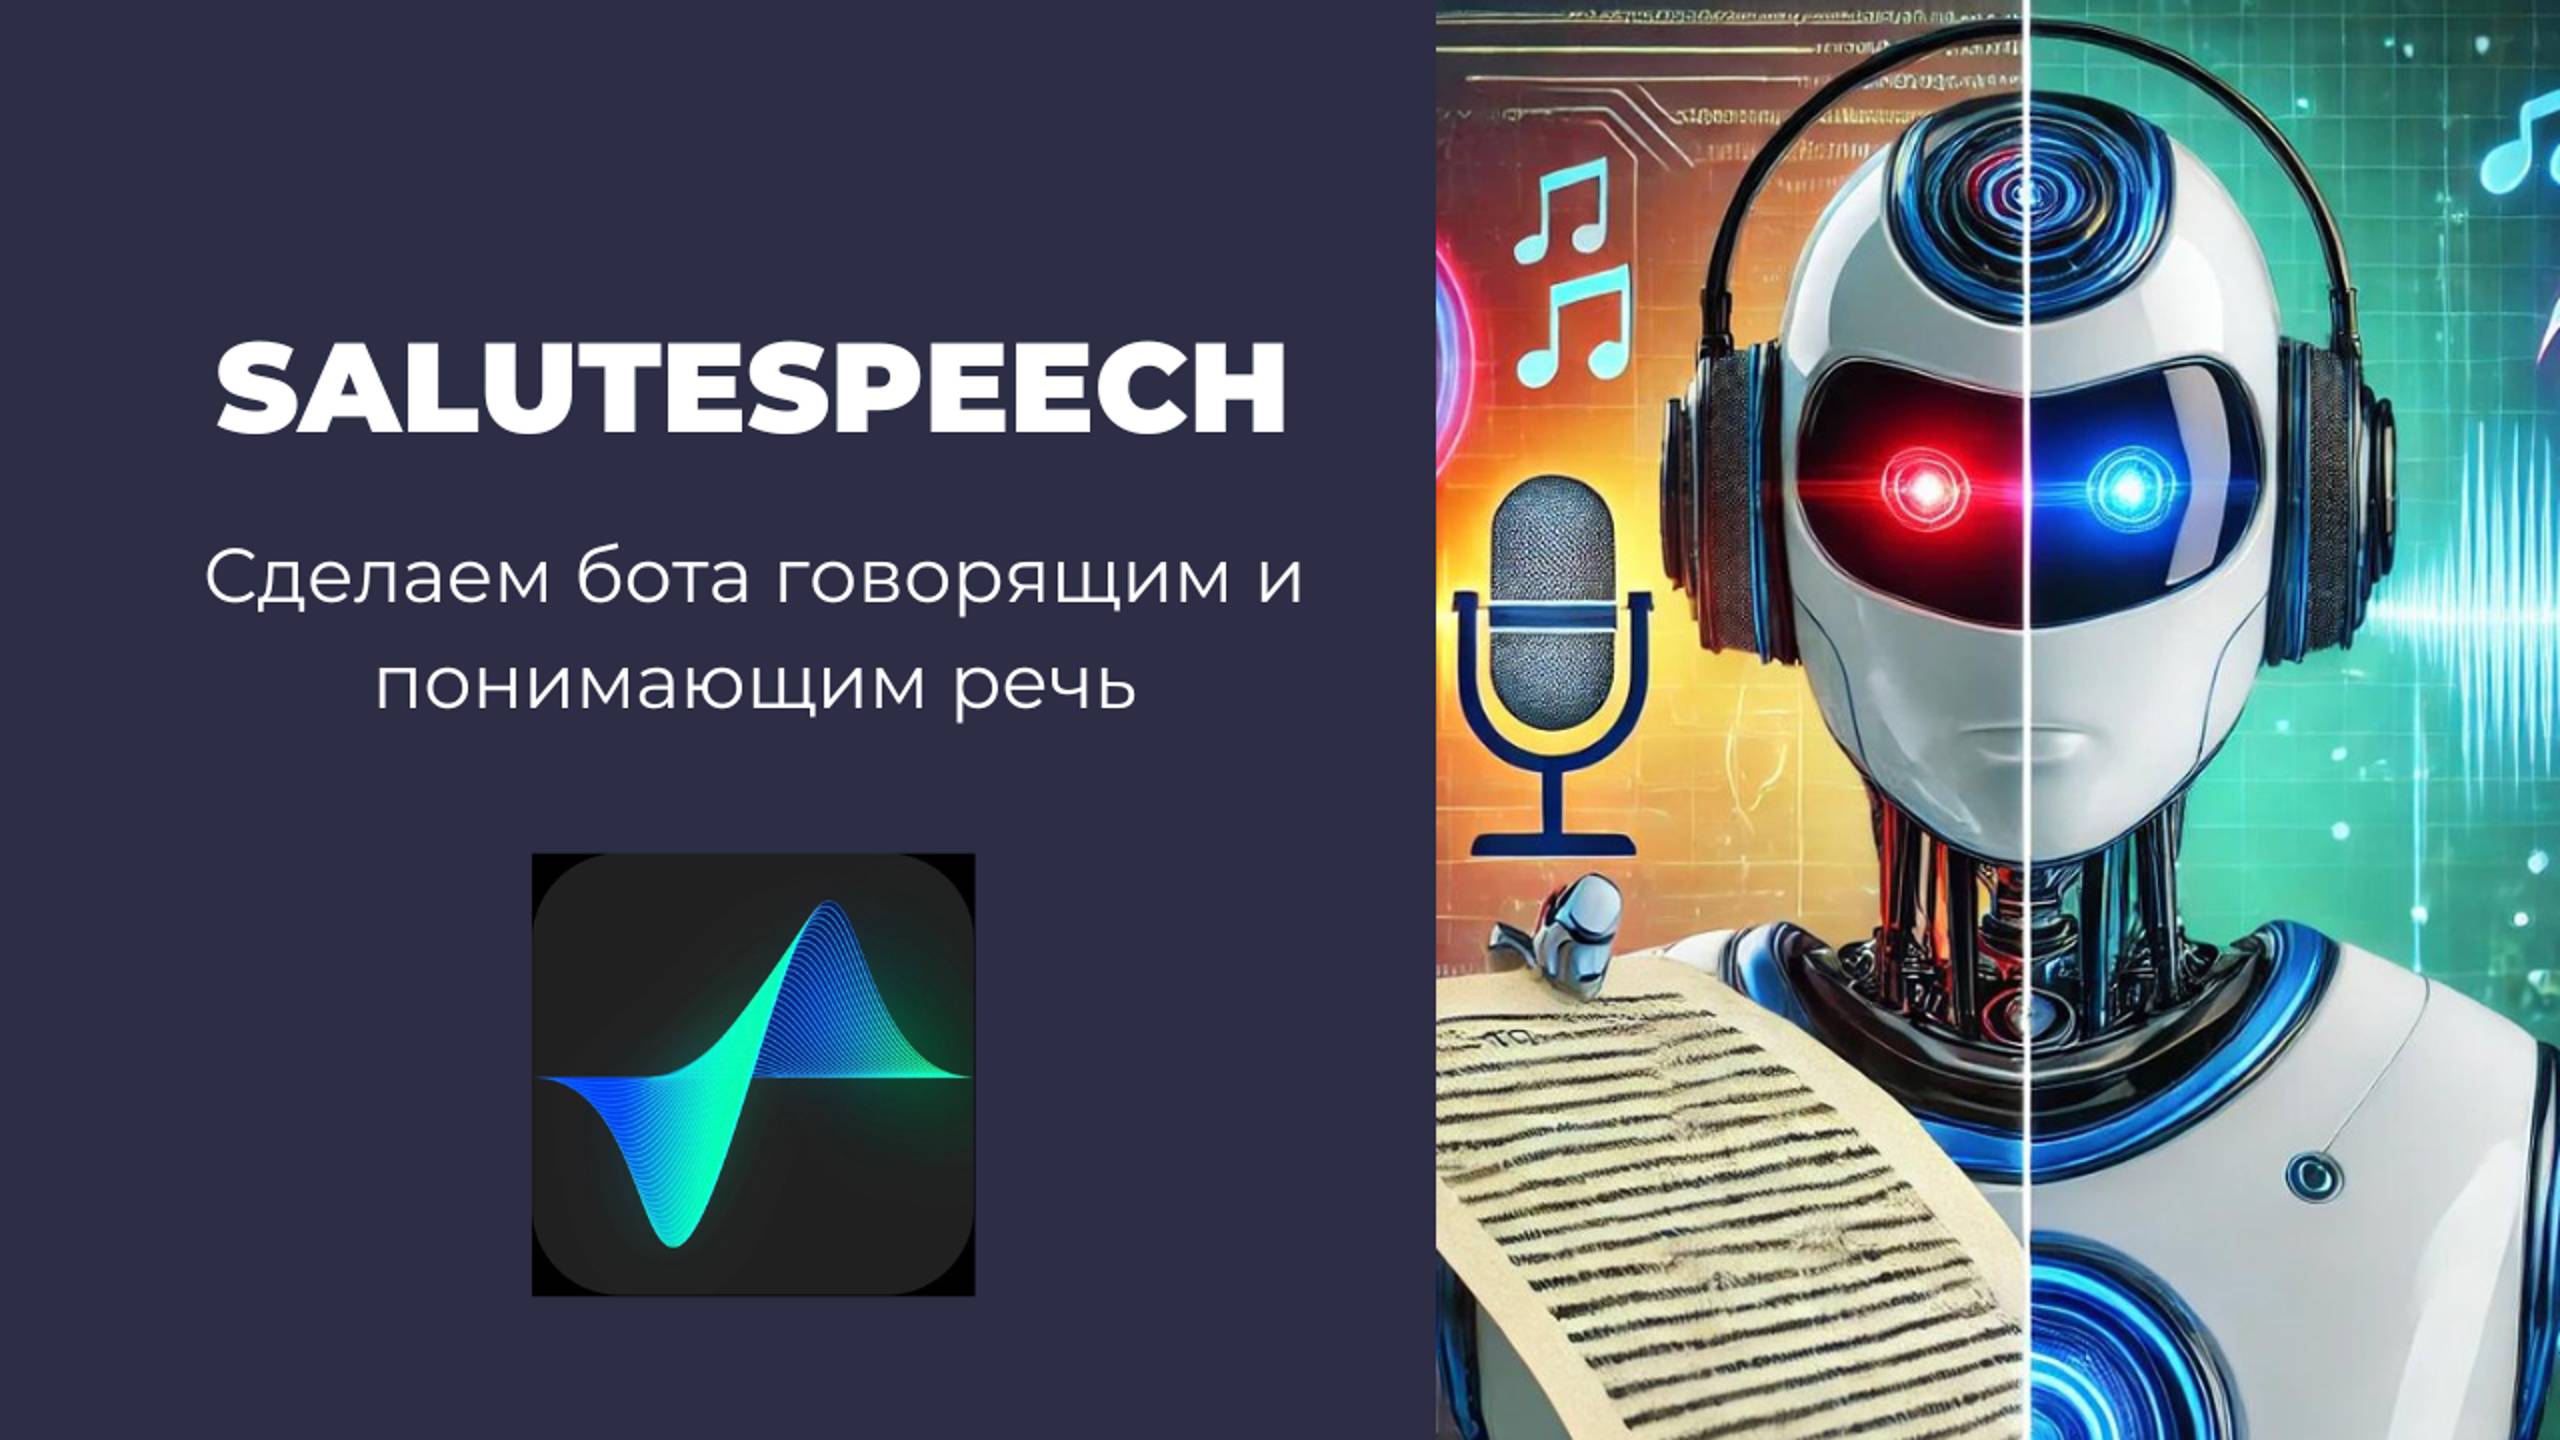 SaluteSpeech API + GigaChat API: Как научить бота слушать и говорить, используя Python?